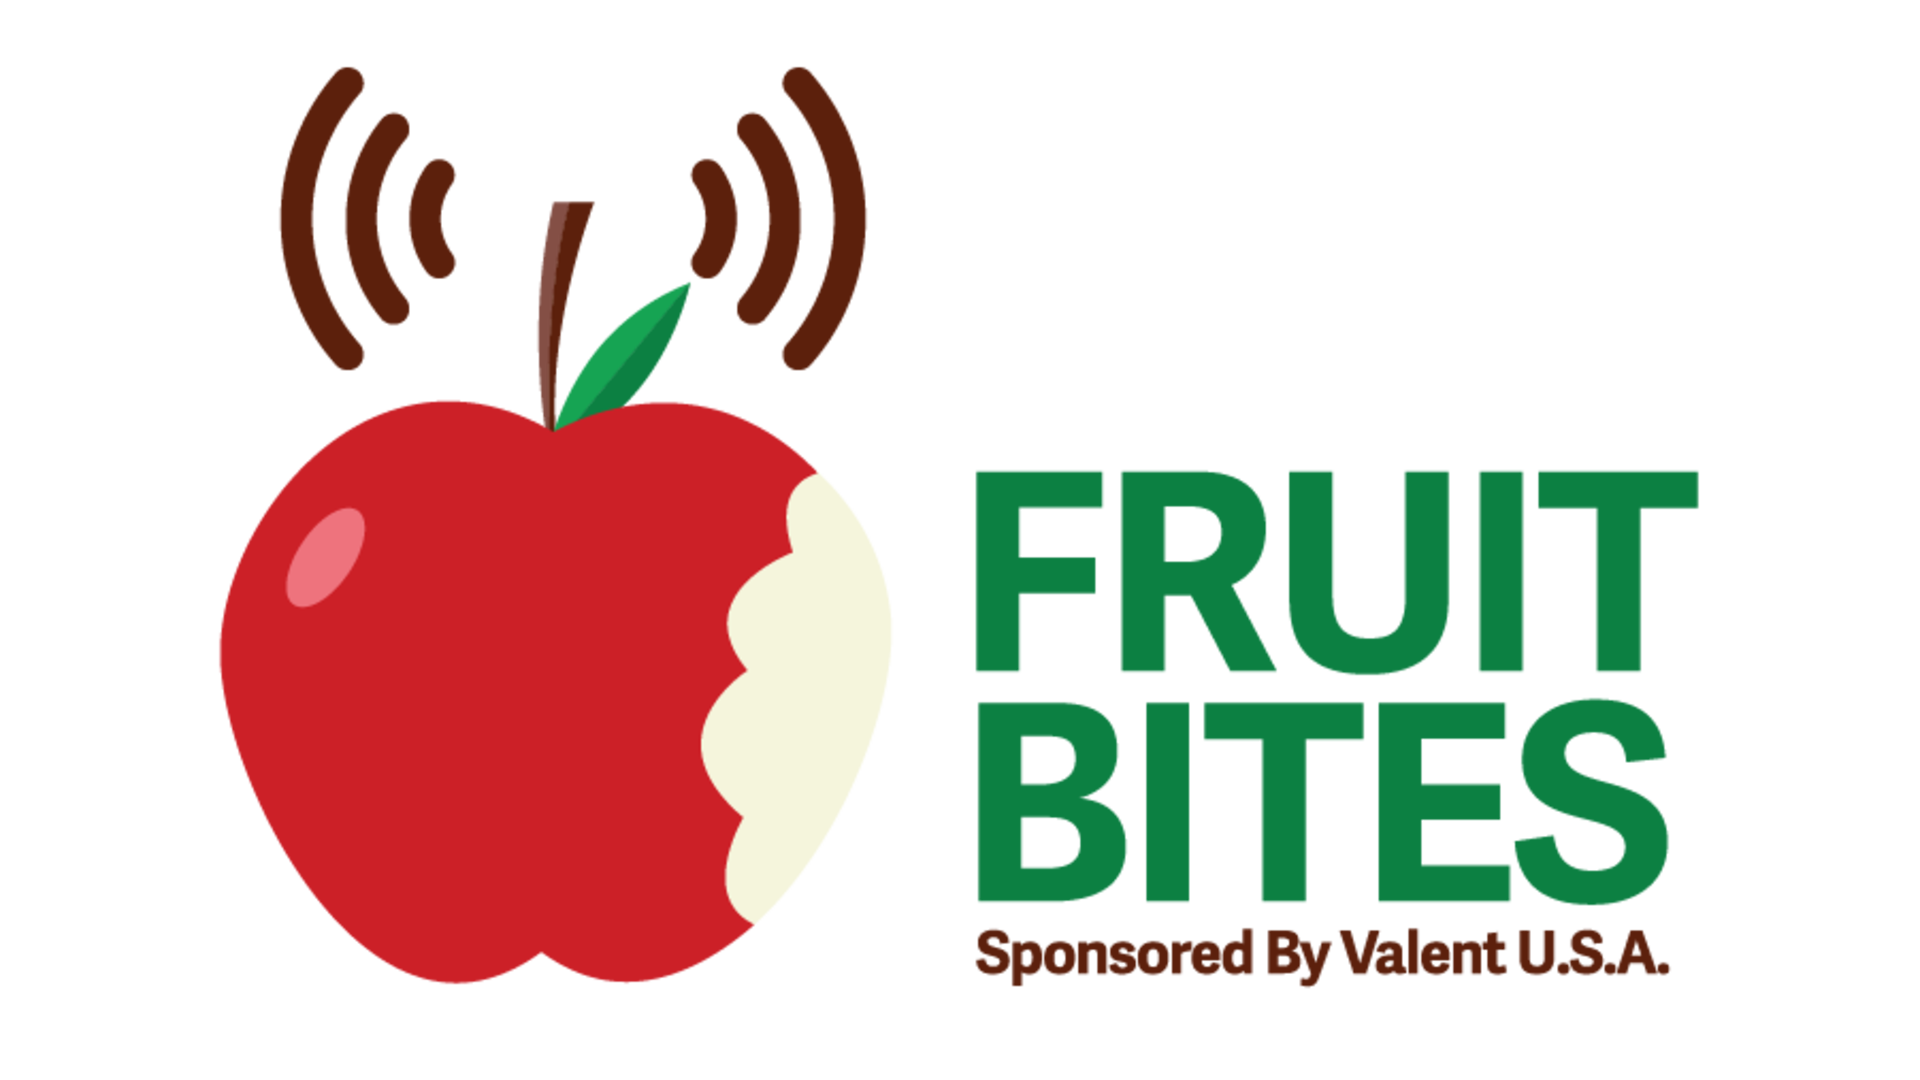 Fruit Bites for September 20-22 ... Nutrients